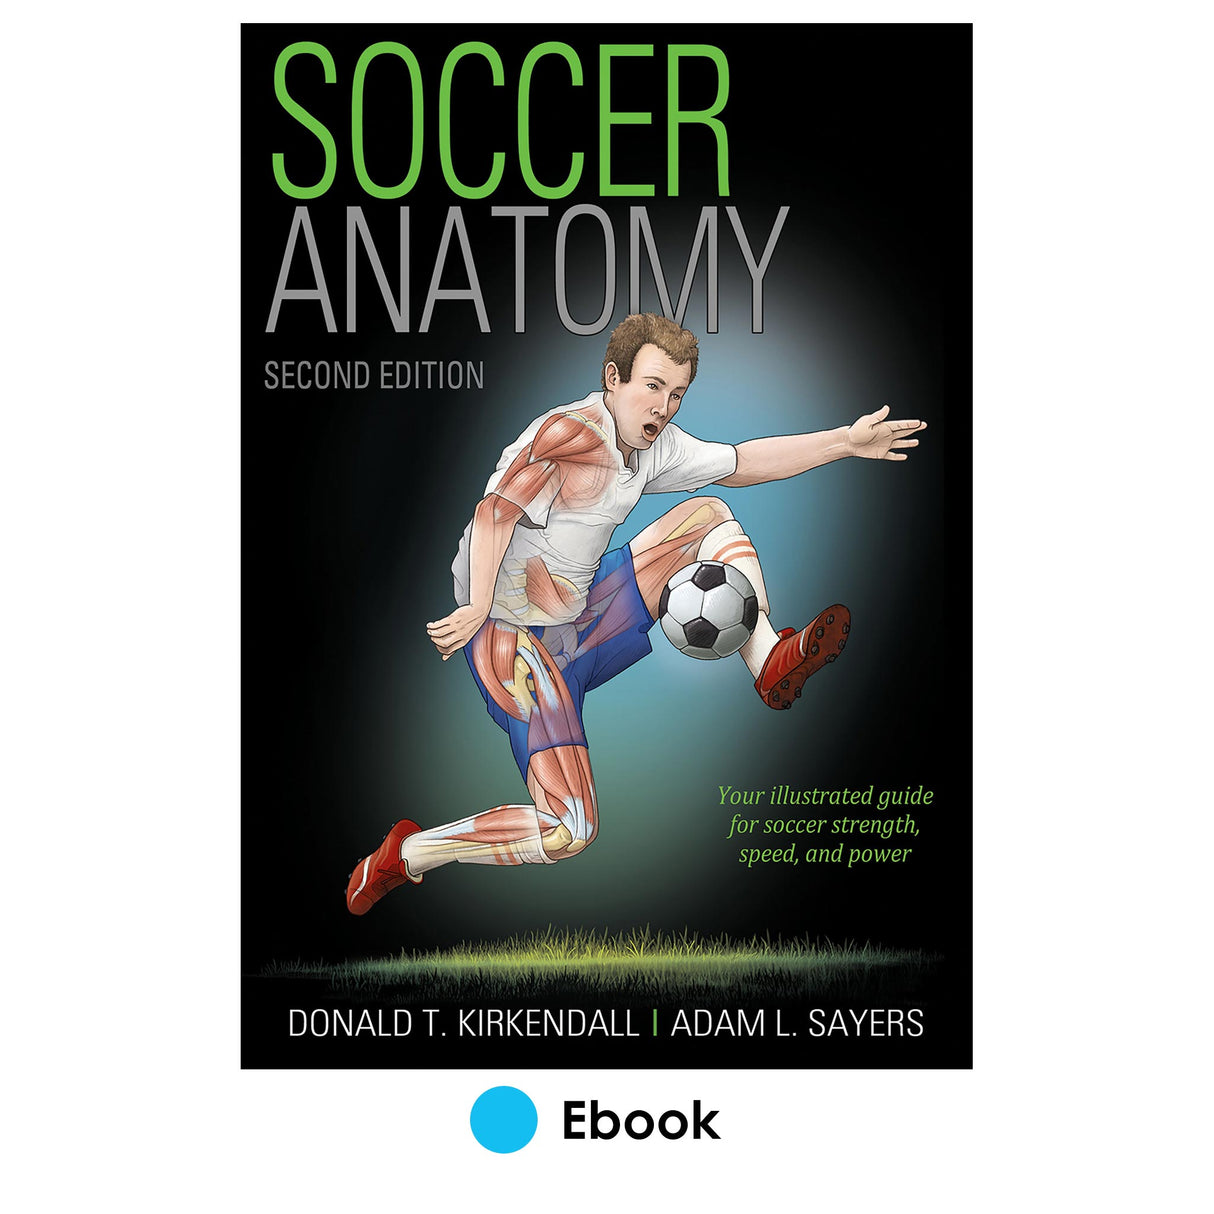 Soccer Anatomy 2nd Edition epub